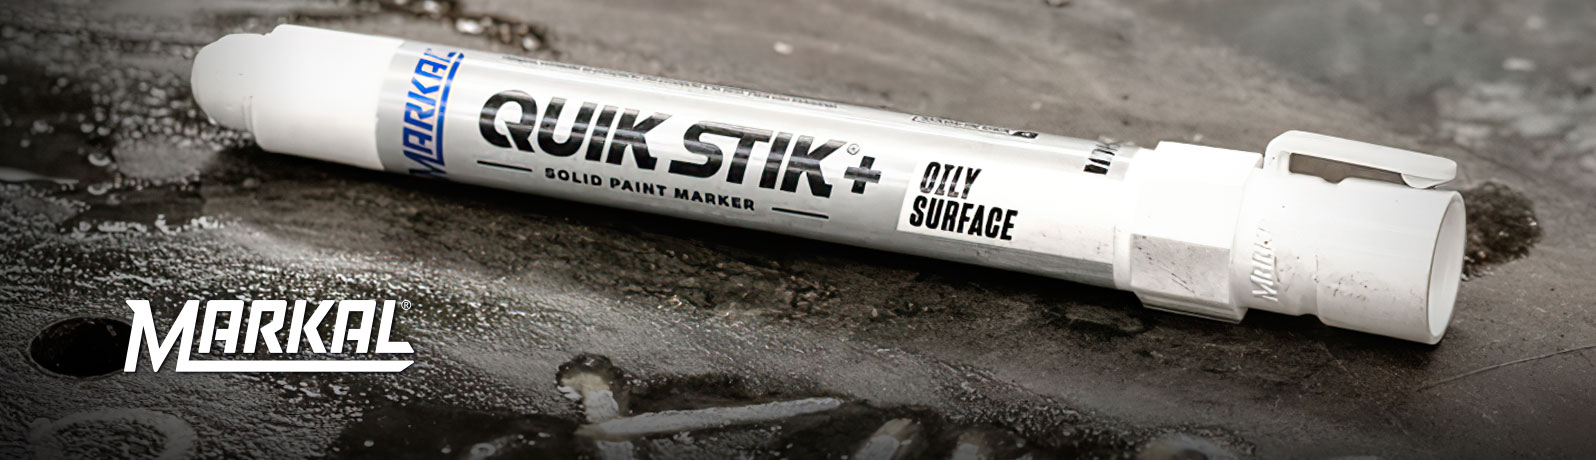 QUIK STIK®+ Oily Surface